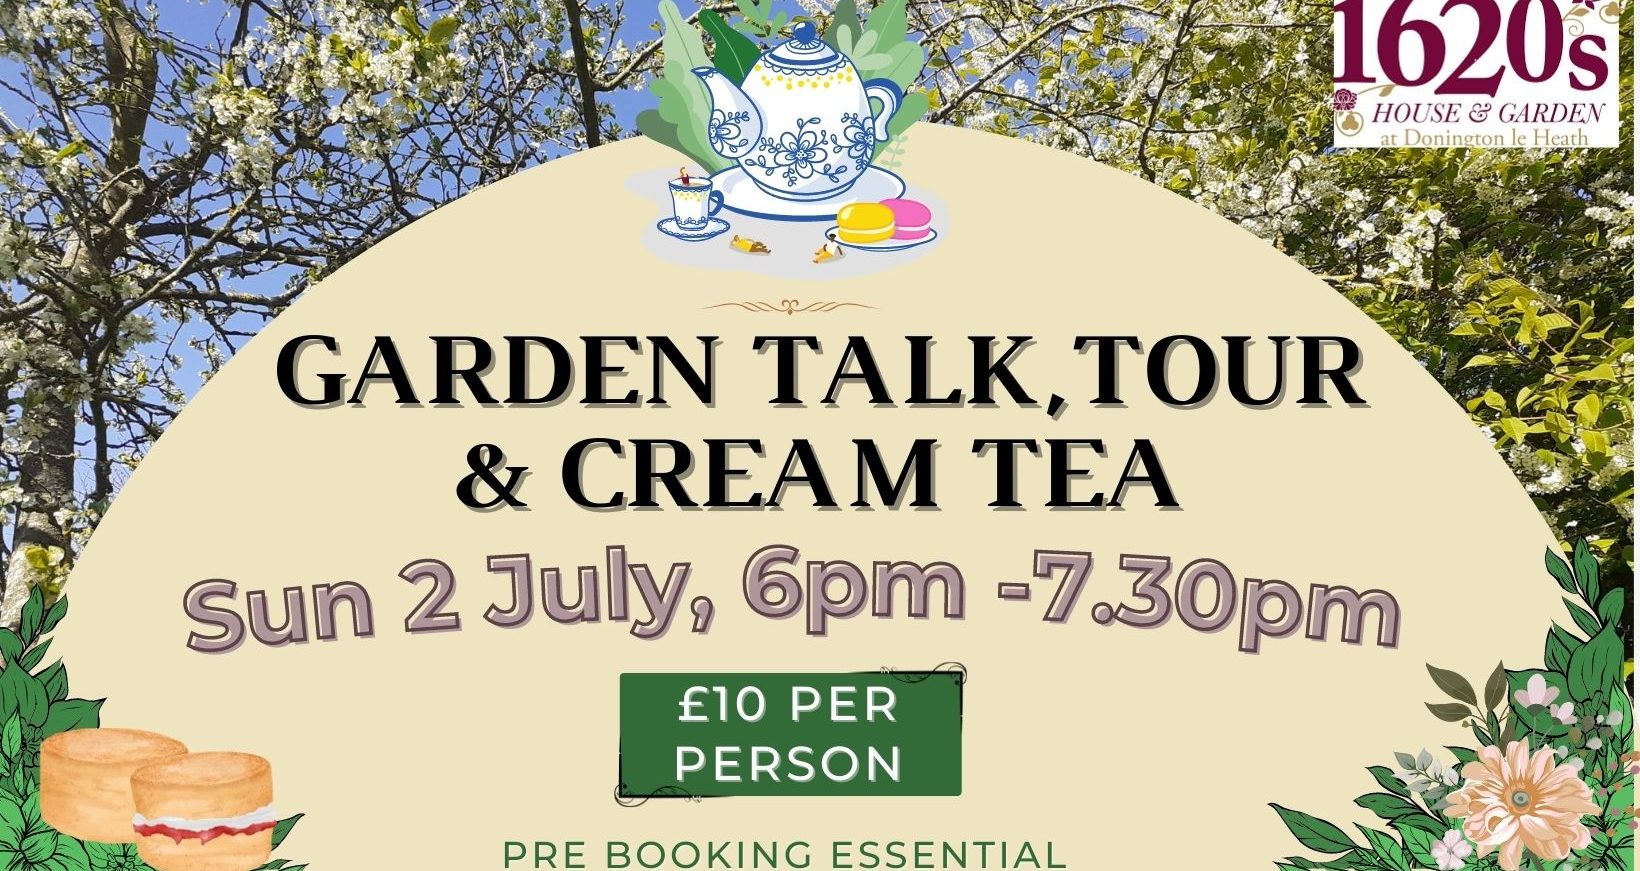 Garden Talk, Tour & Cream Tea